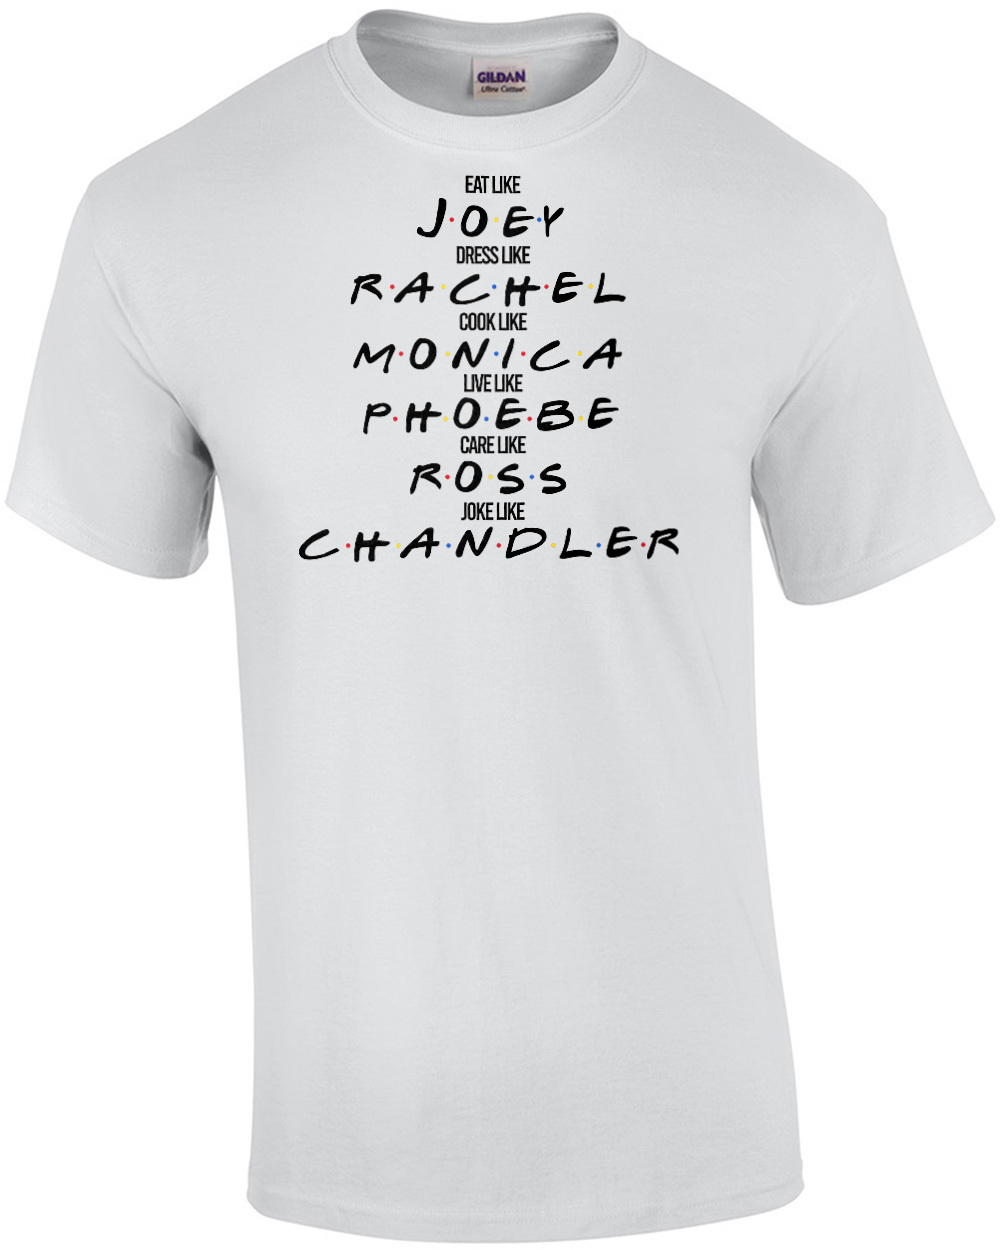 Eat like Joey - Dress like Rachel - Cook like Monica - Funny Friends T-Shirt  - 90\'s T-Shirt